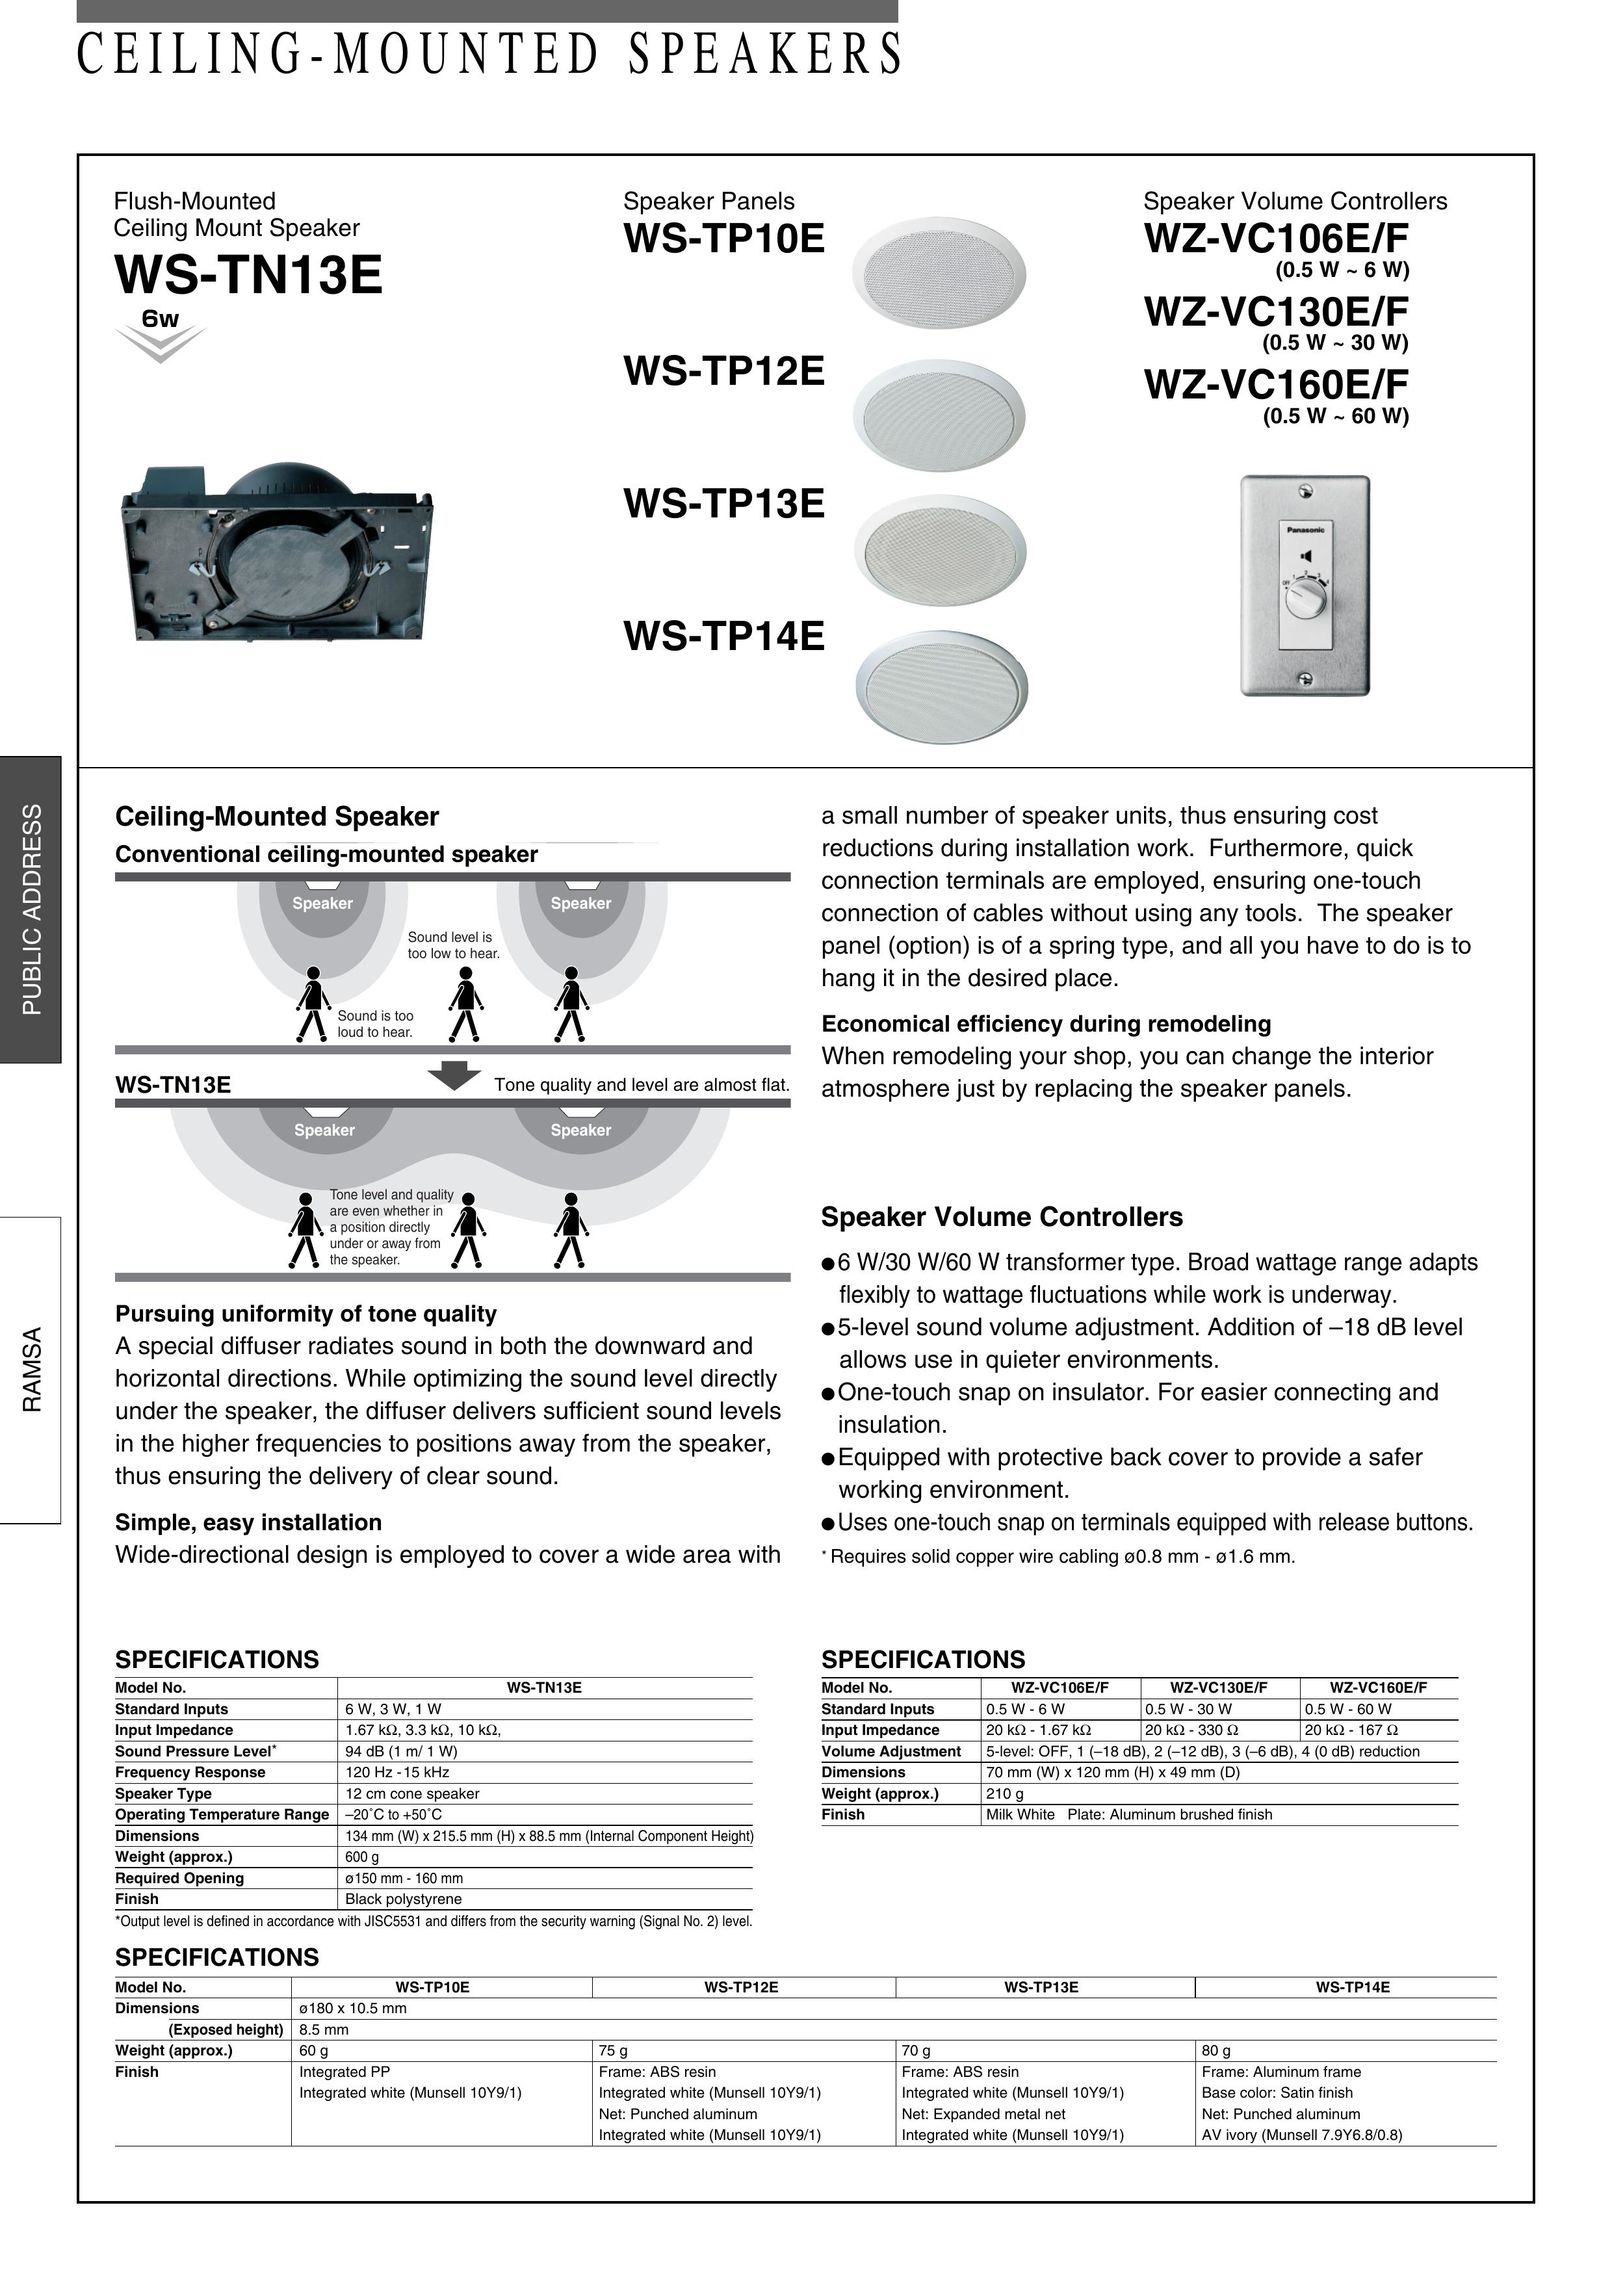 Panasonic WZ-VC106E/F Speaker User Manual